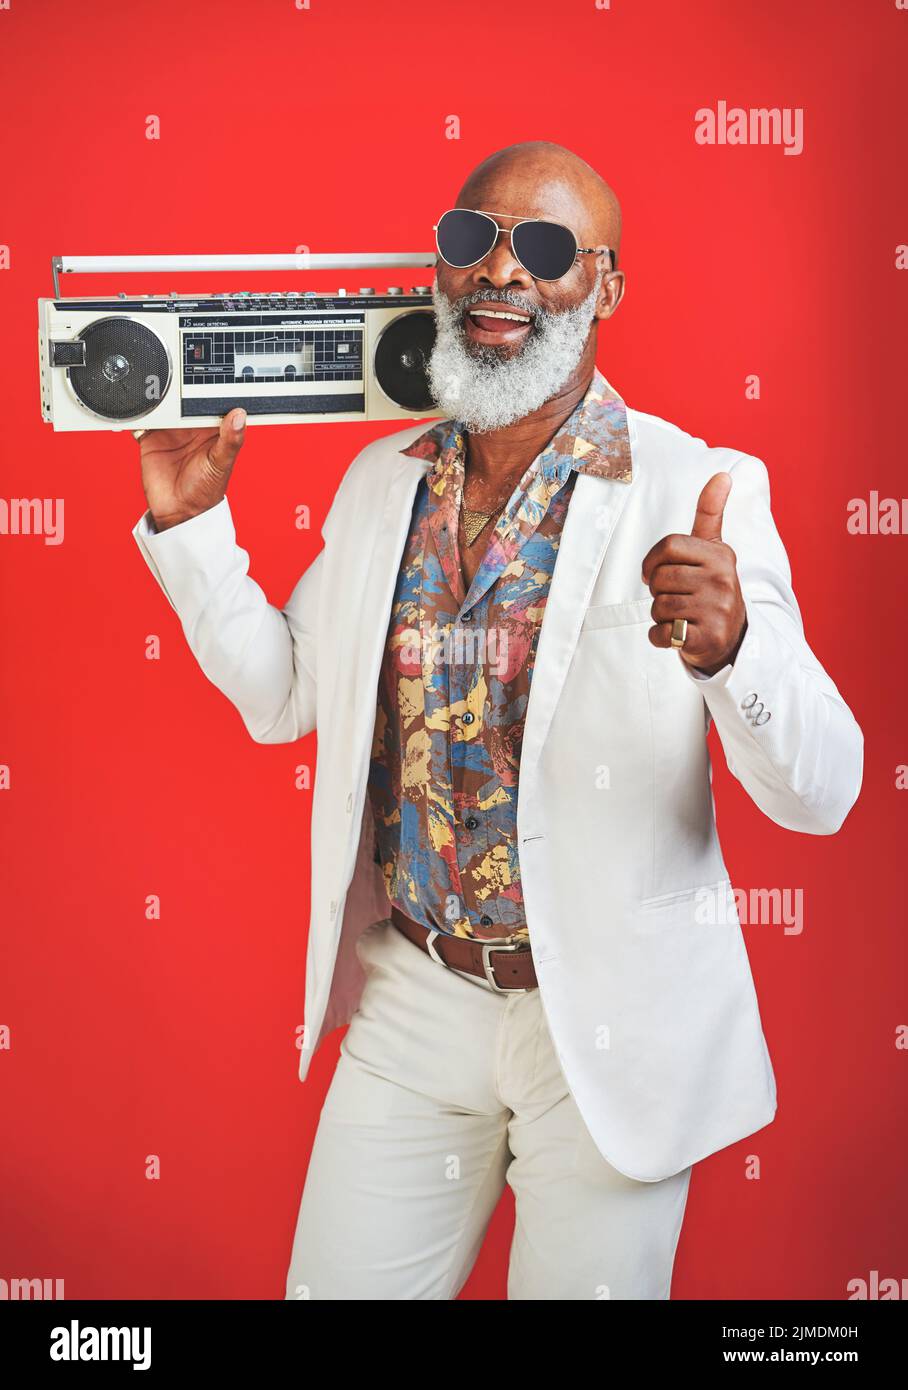 Musik ist das, was den Geist erhebt. Studioaufnahme eines älteren Mannes, der Vintage-Kleidung trägt, während er mit einer Boombox vor einem roten Hintergrund posiert. Stockfoto